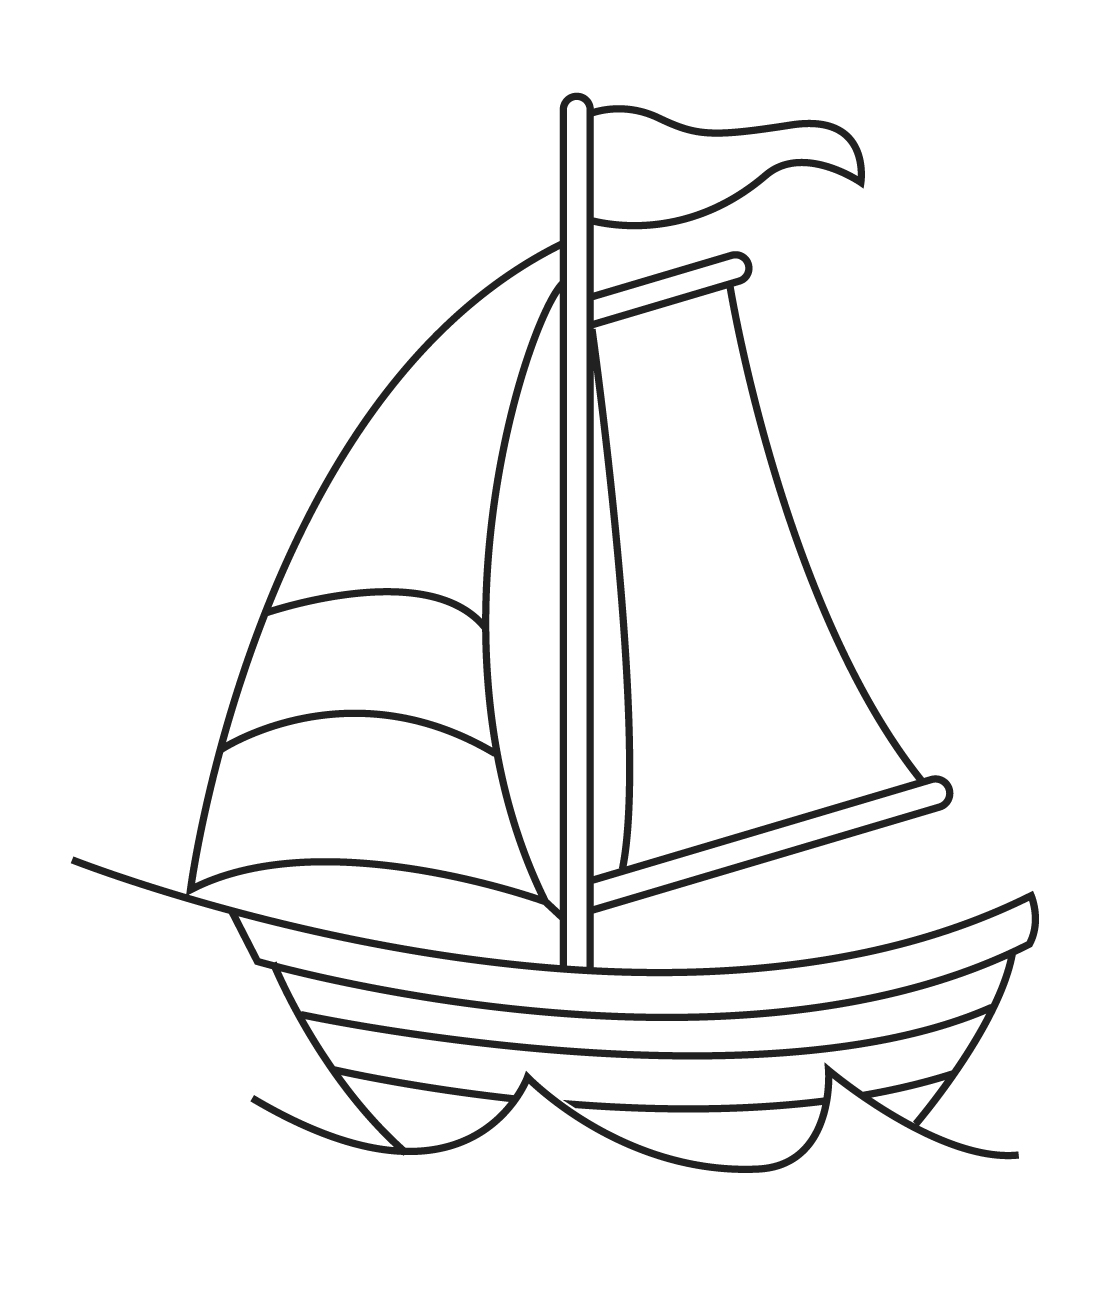 Similiar Black And White Sailboat Drawing Keywords.